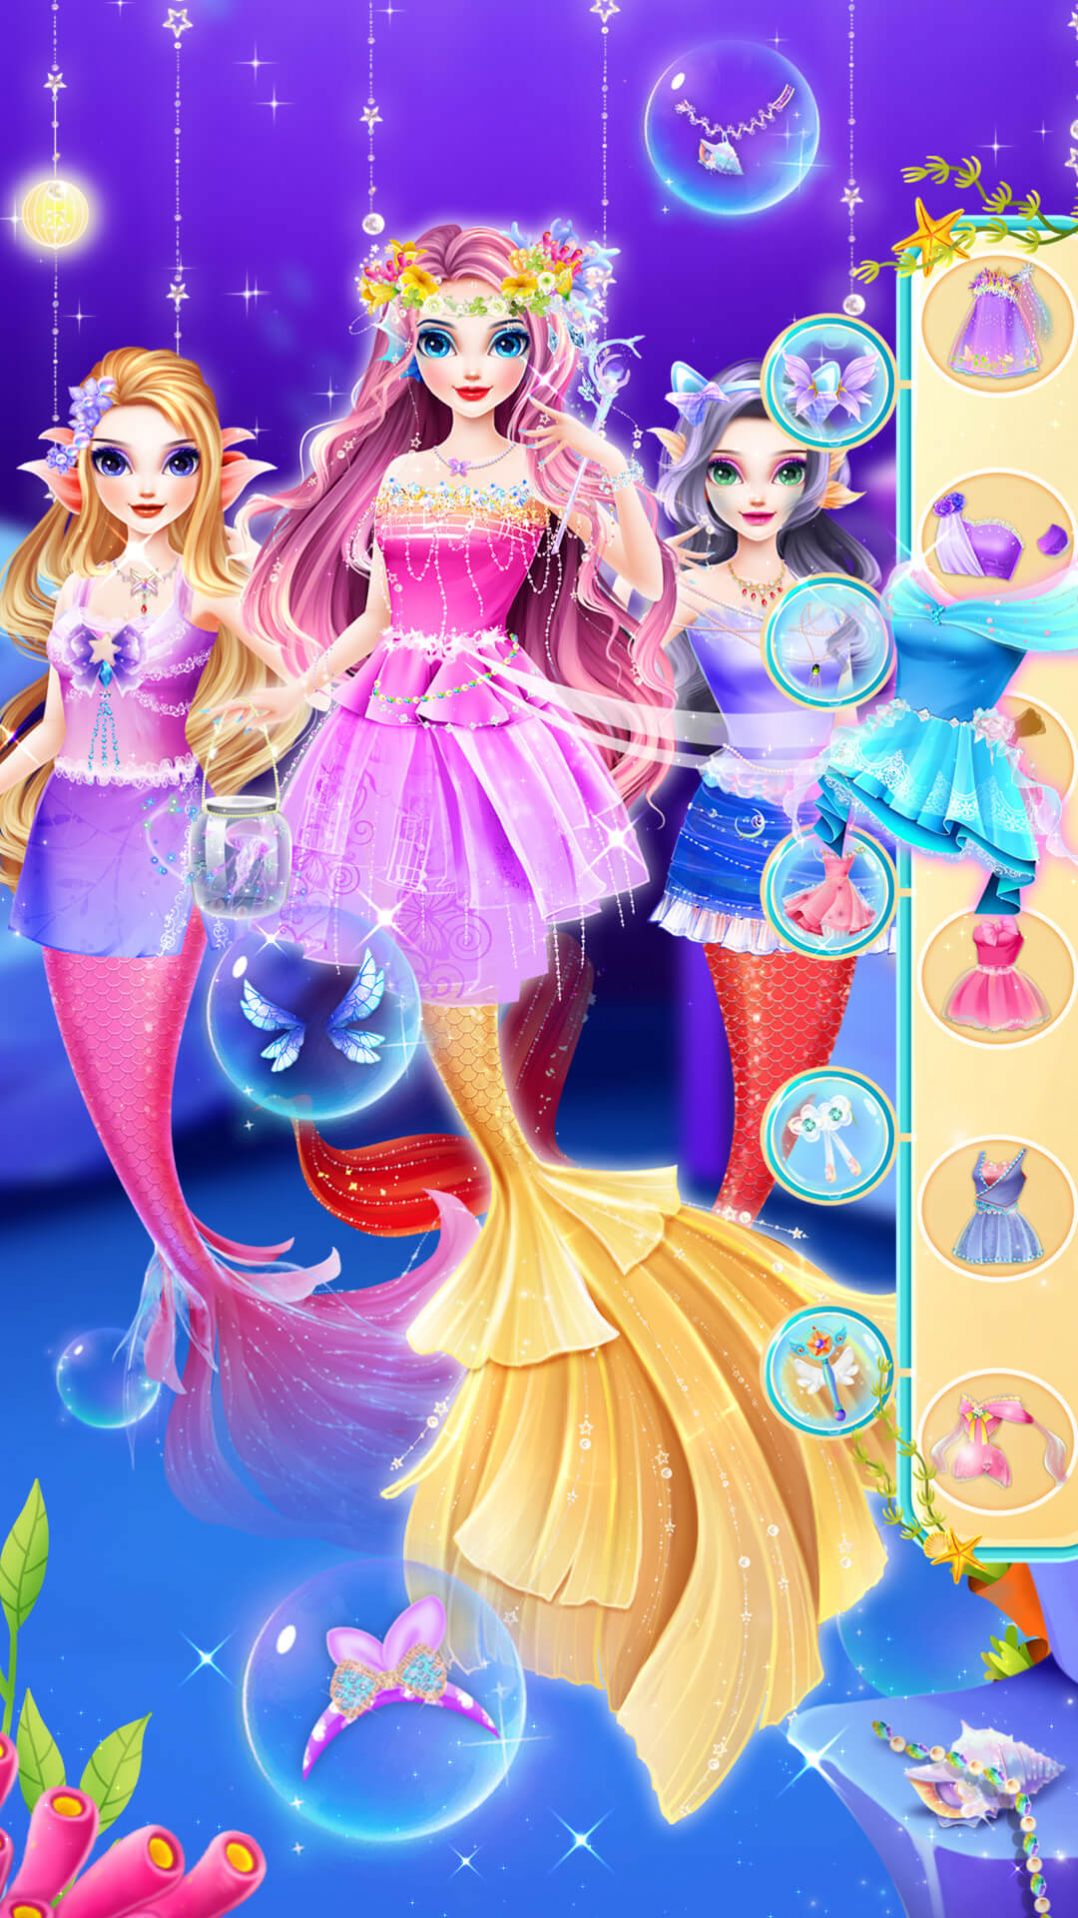 时尚美人鱼城堡装扮故事游戏官方版下载图片1